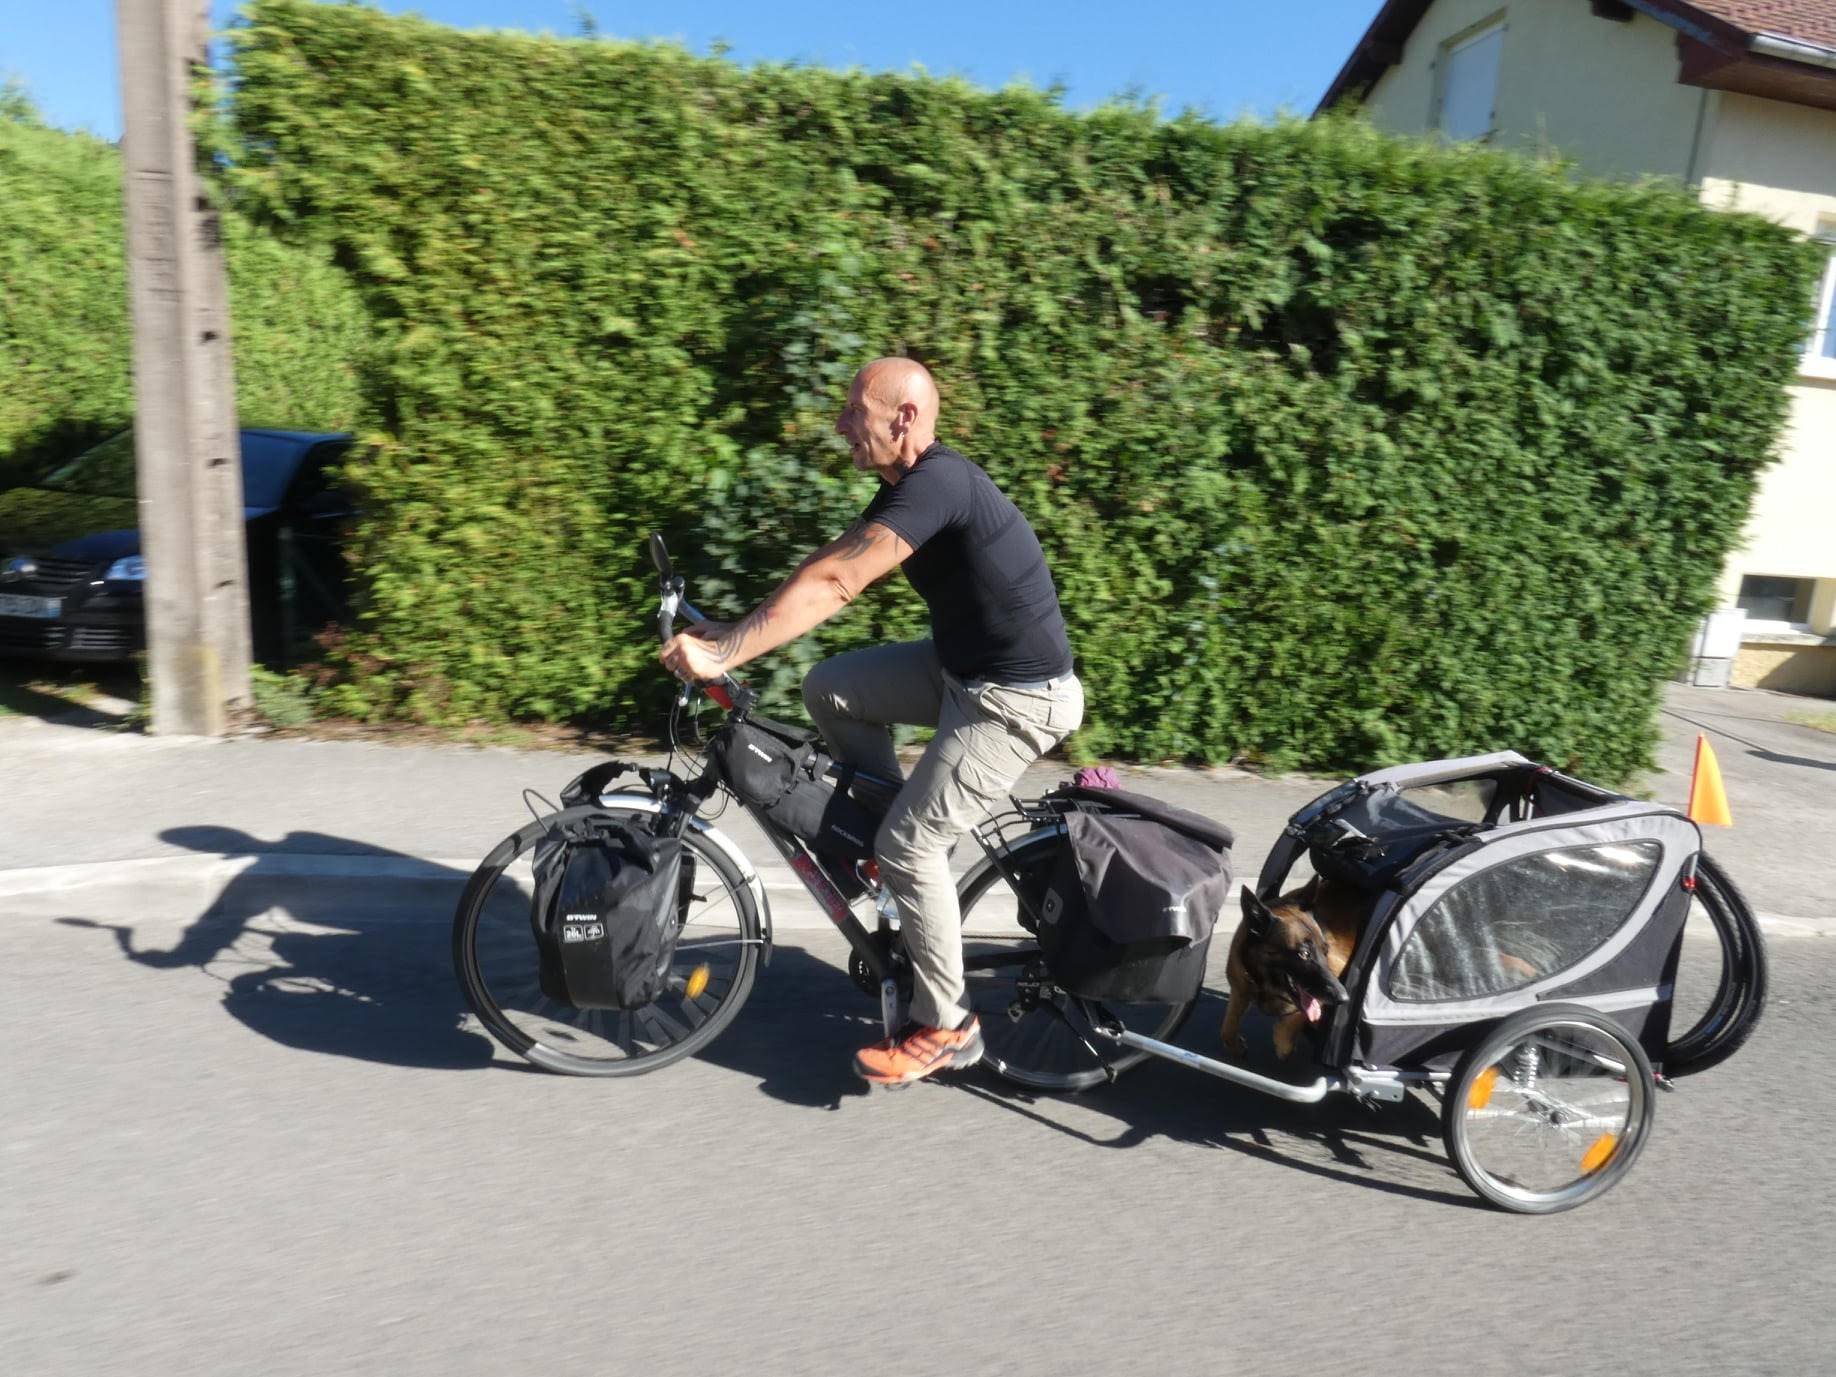 Roadtrip à vélo avec son chien, 700 km à travers la France pour Nikita et Frédéric